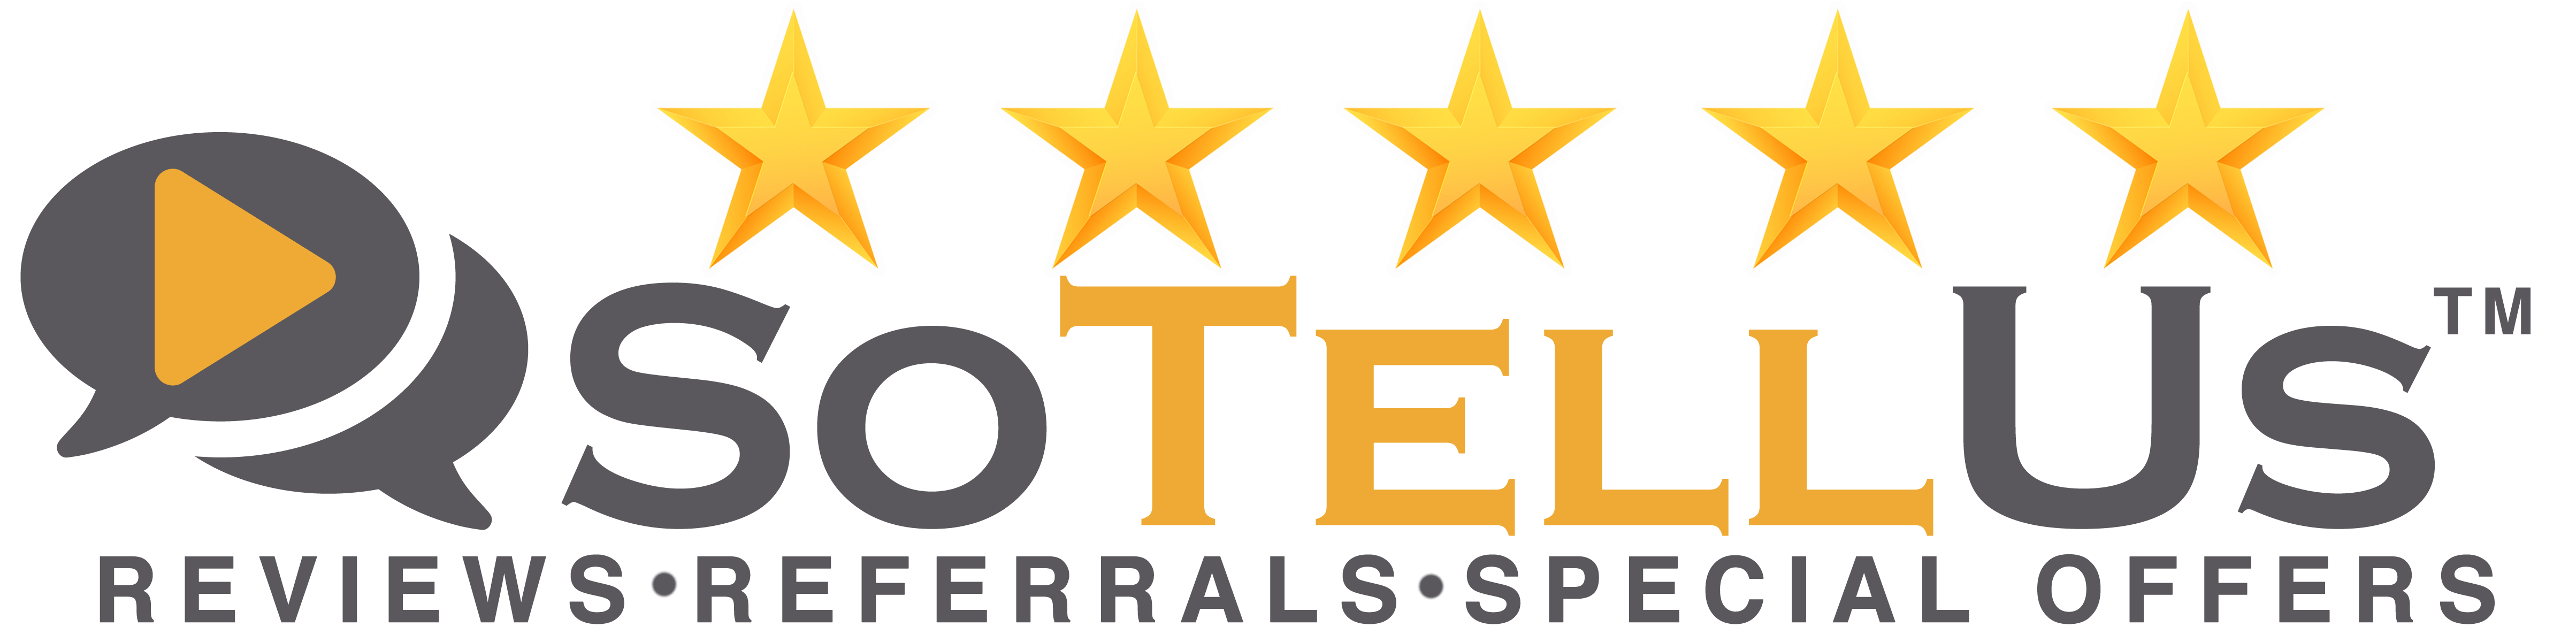 2021 SoTellUs Logo Stars Hi Res